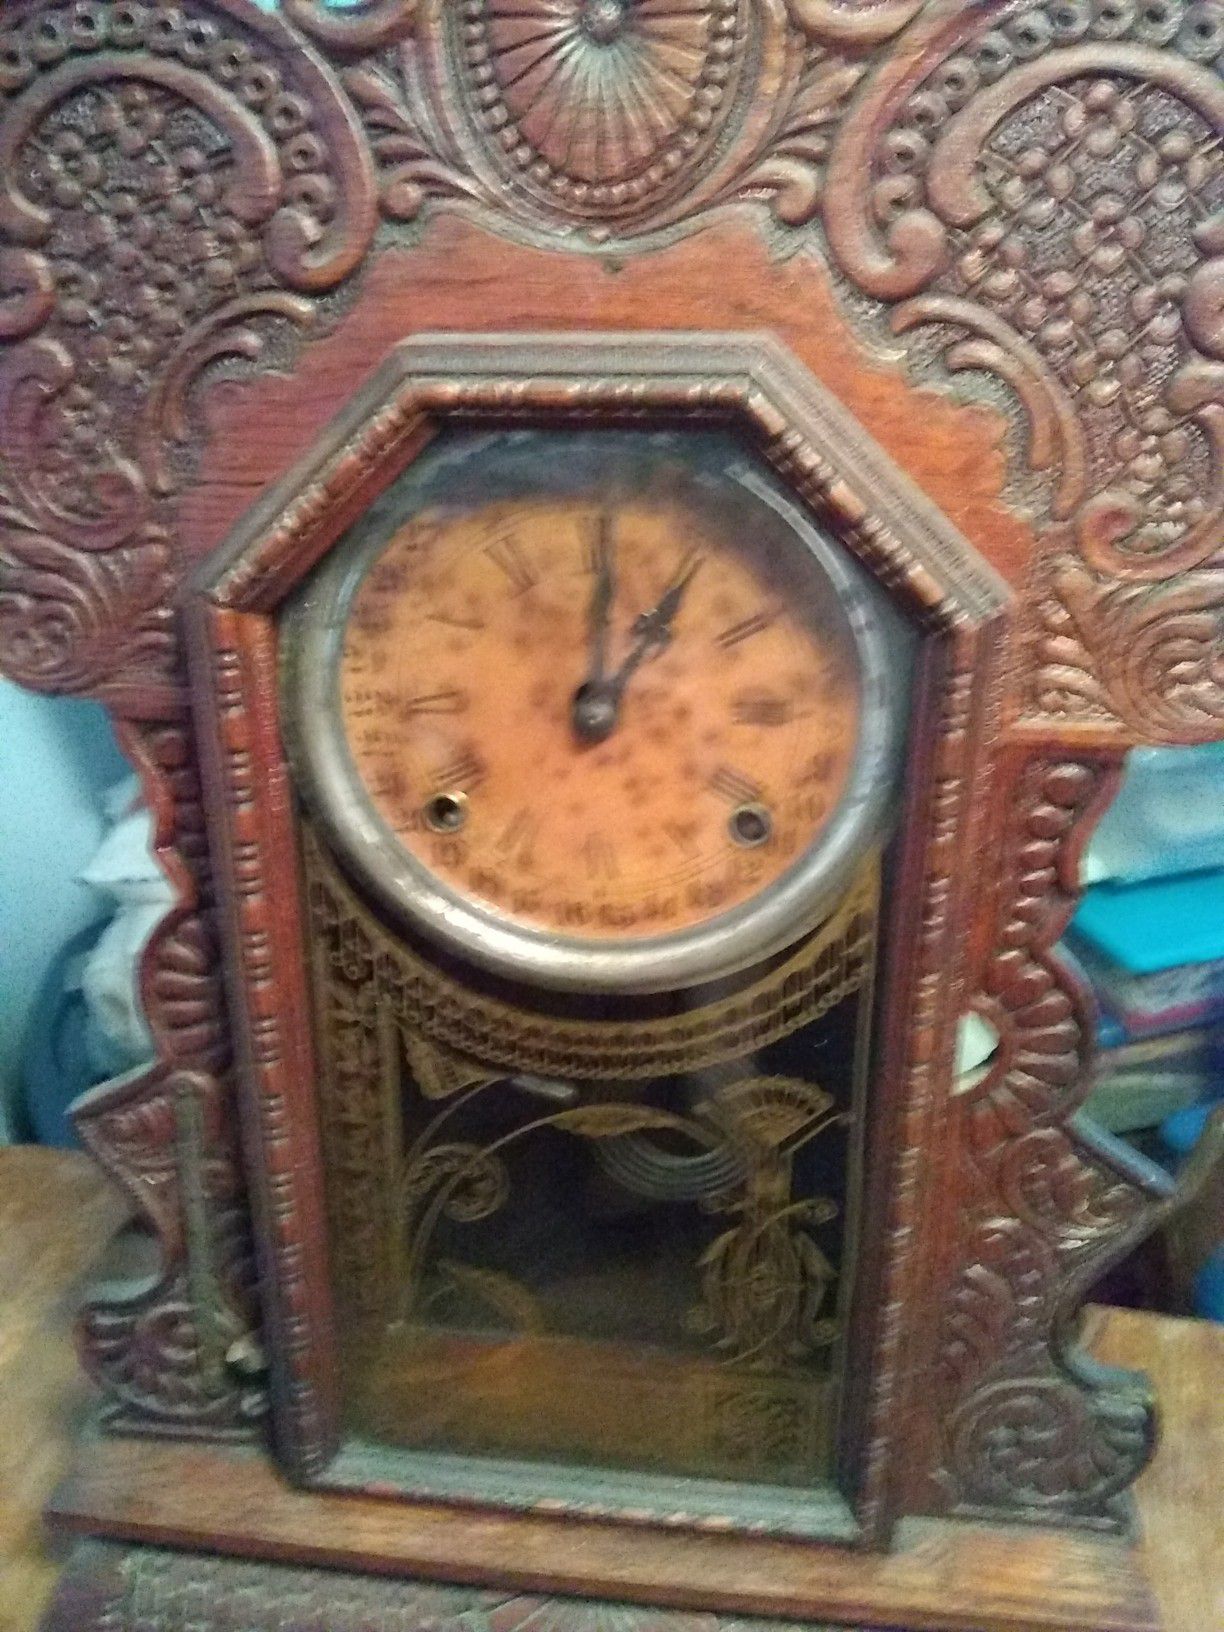 Antique - Ingram clock.